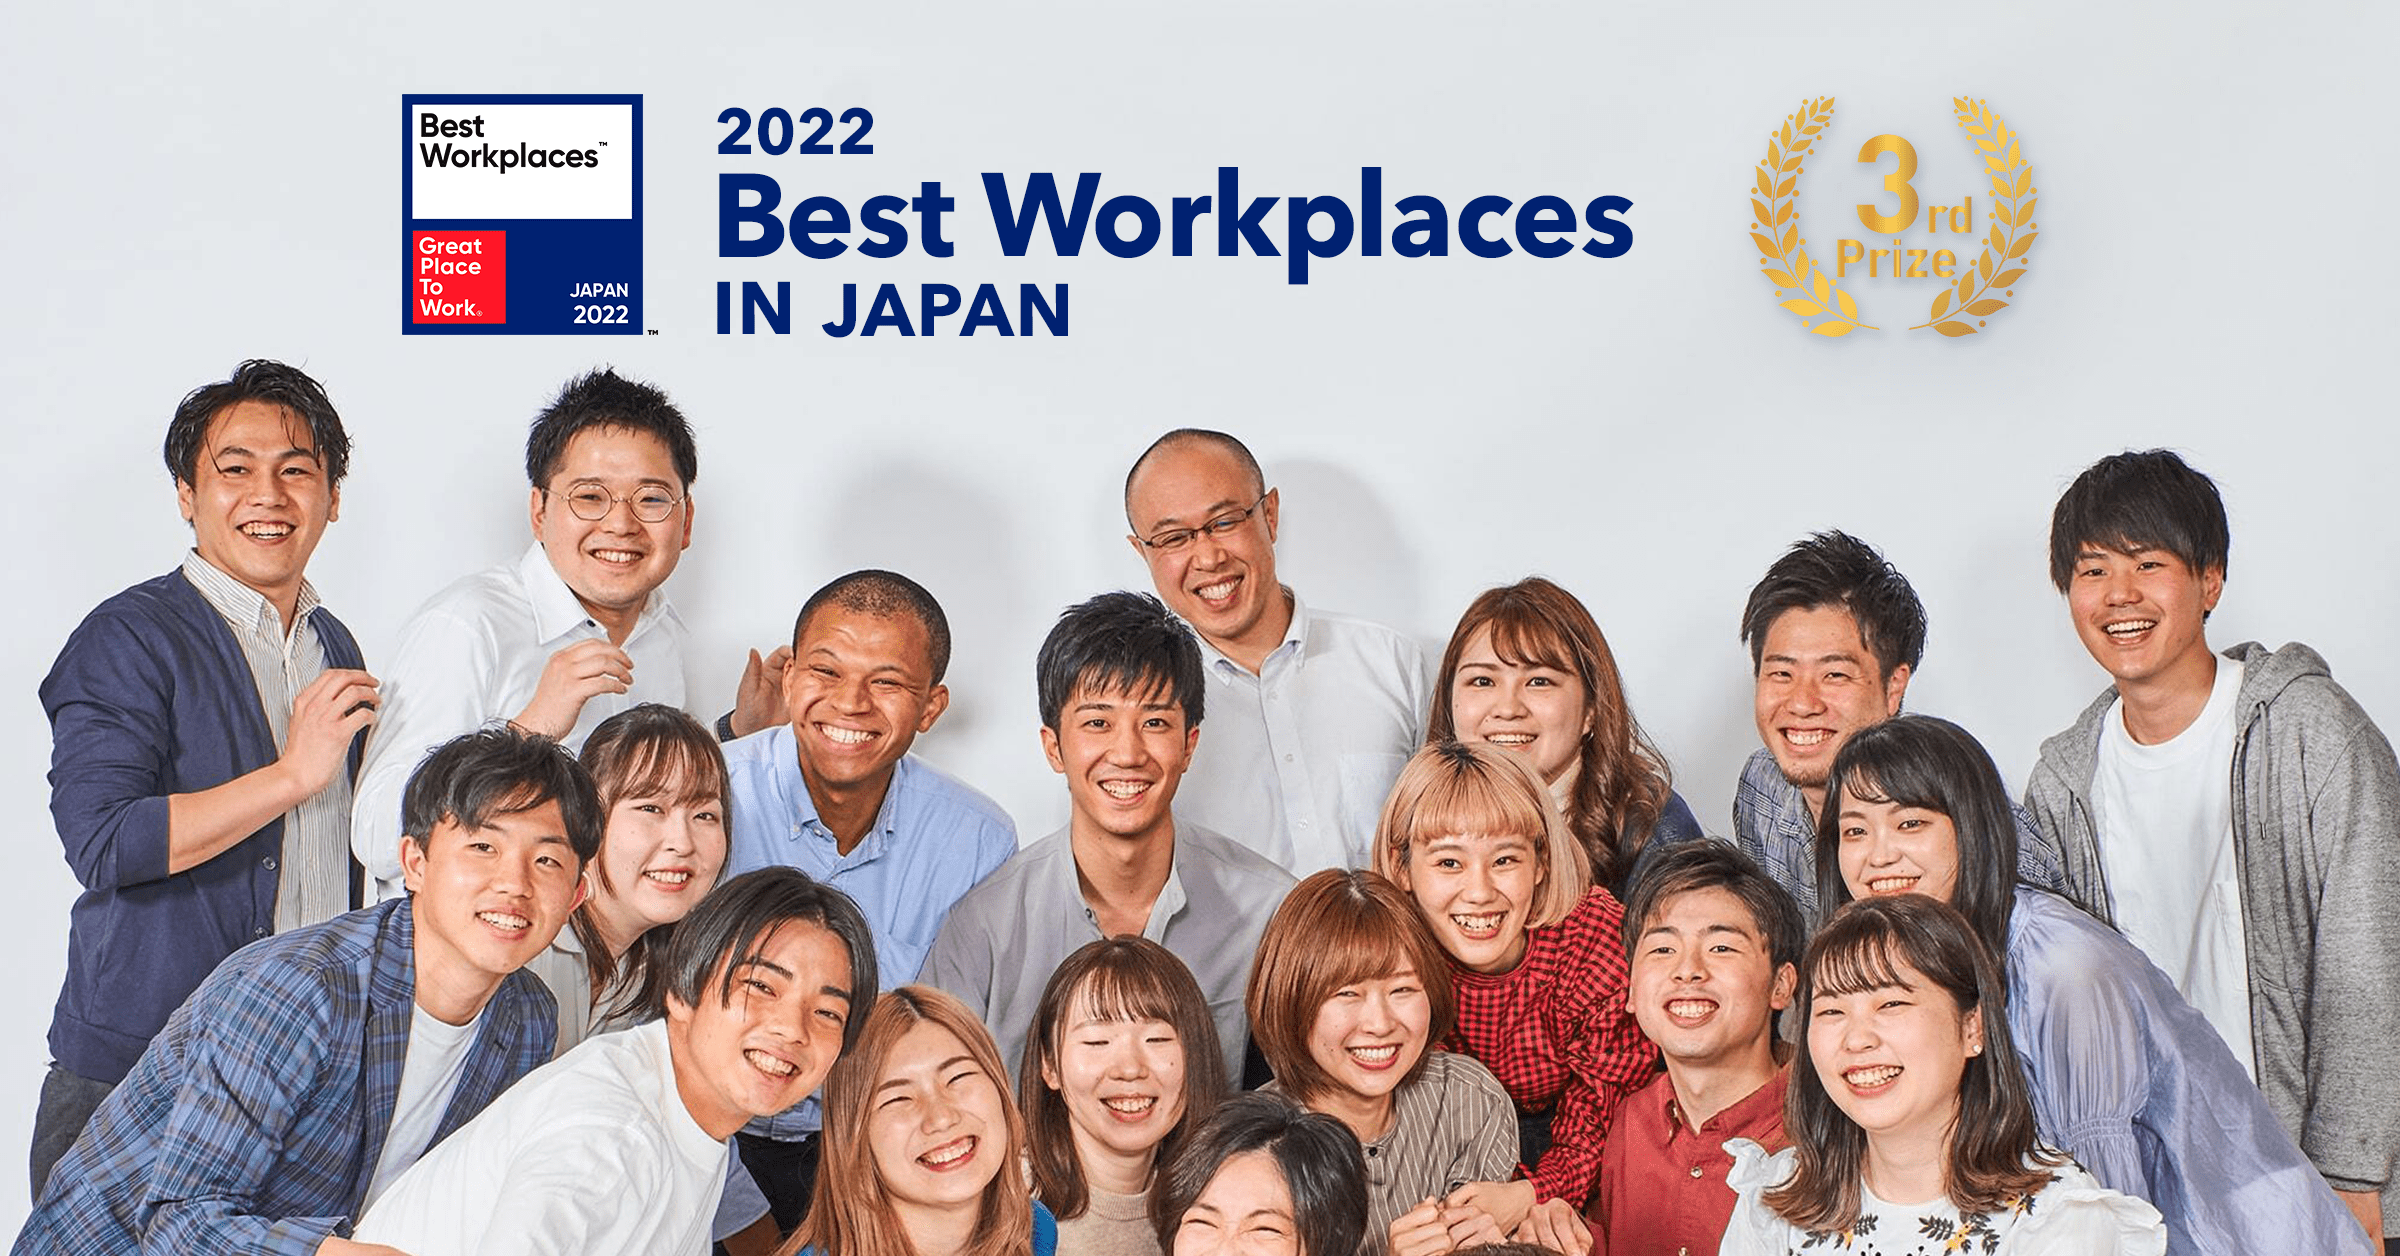 Great Place to Work発表 2022年版「働きがいのある会社」ランキングで第3位を獲得